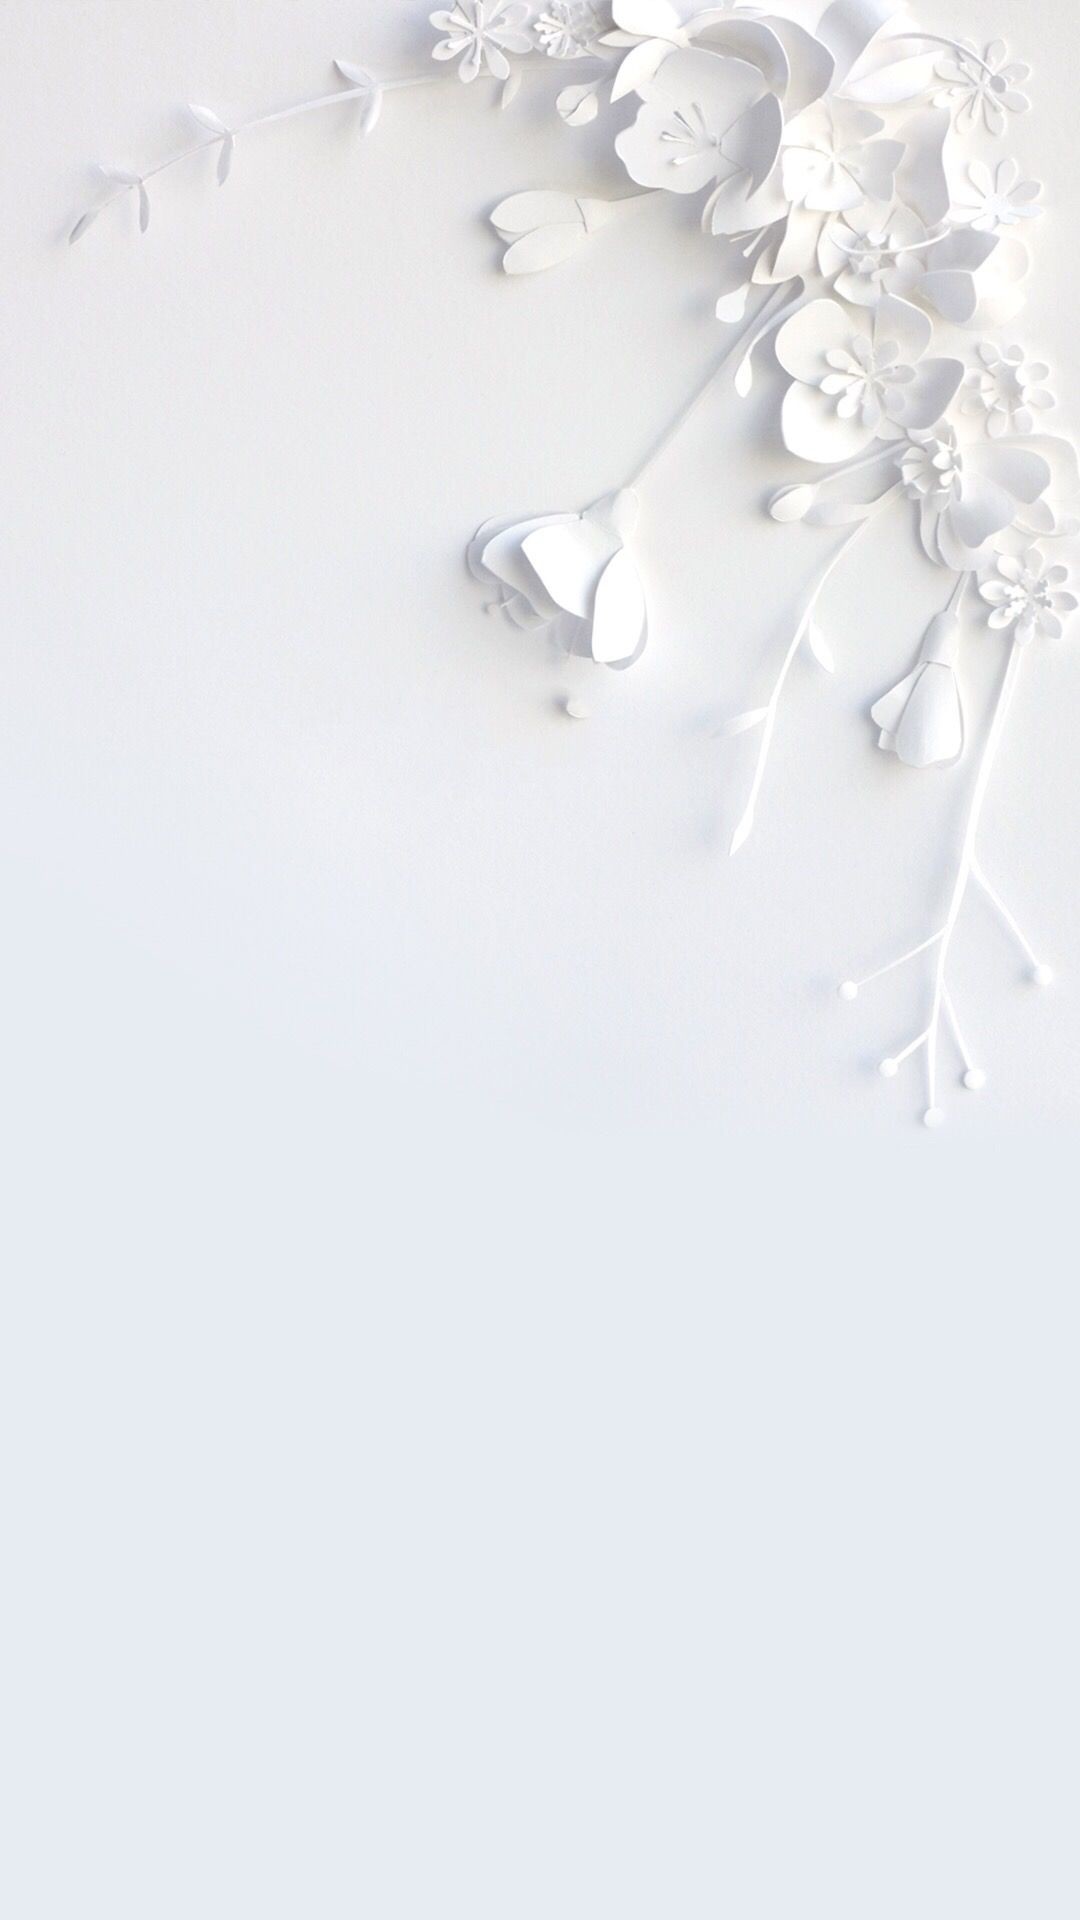 1080x1920 White flower wallpaper